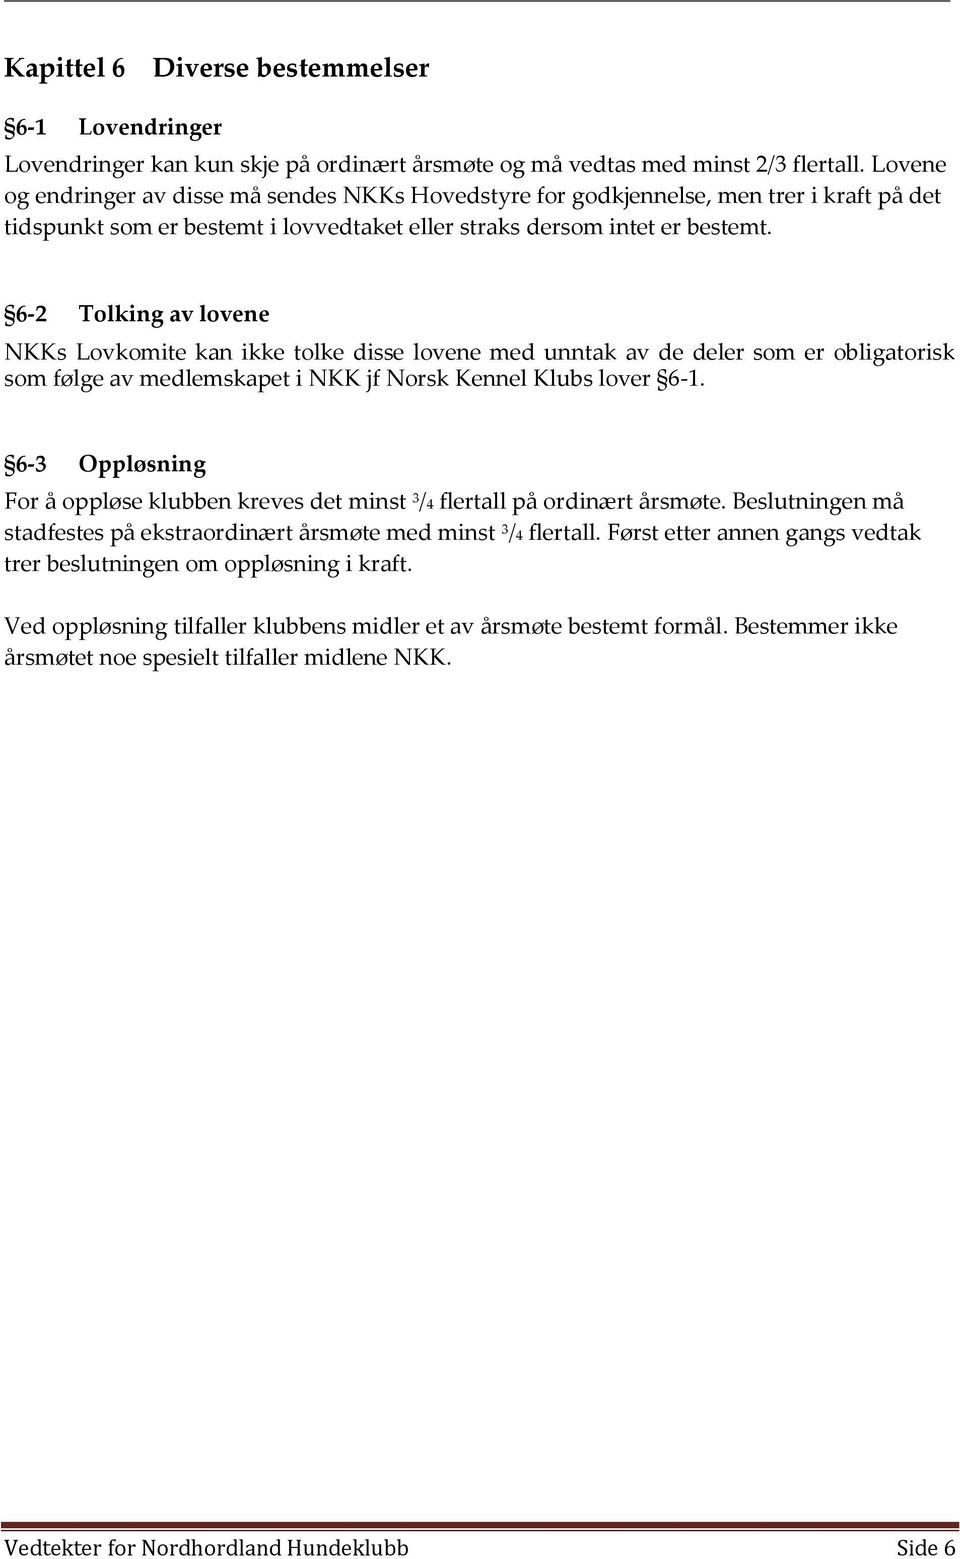 6-2 Tolking av lovene NKKs Lovkomite kan ikke tolke disse lovene med unntak av de deler som er obligatorisk som følge av medlemskapet i NKK jf Norsk Kennel Klubs lover 6-1.